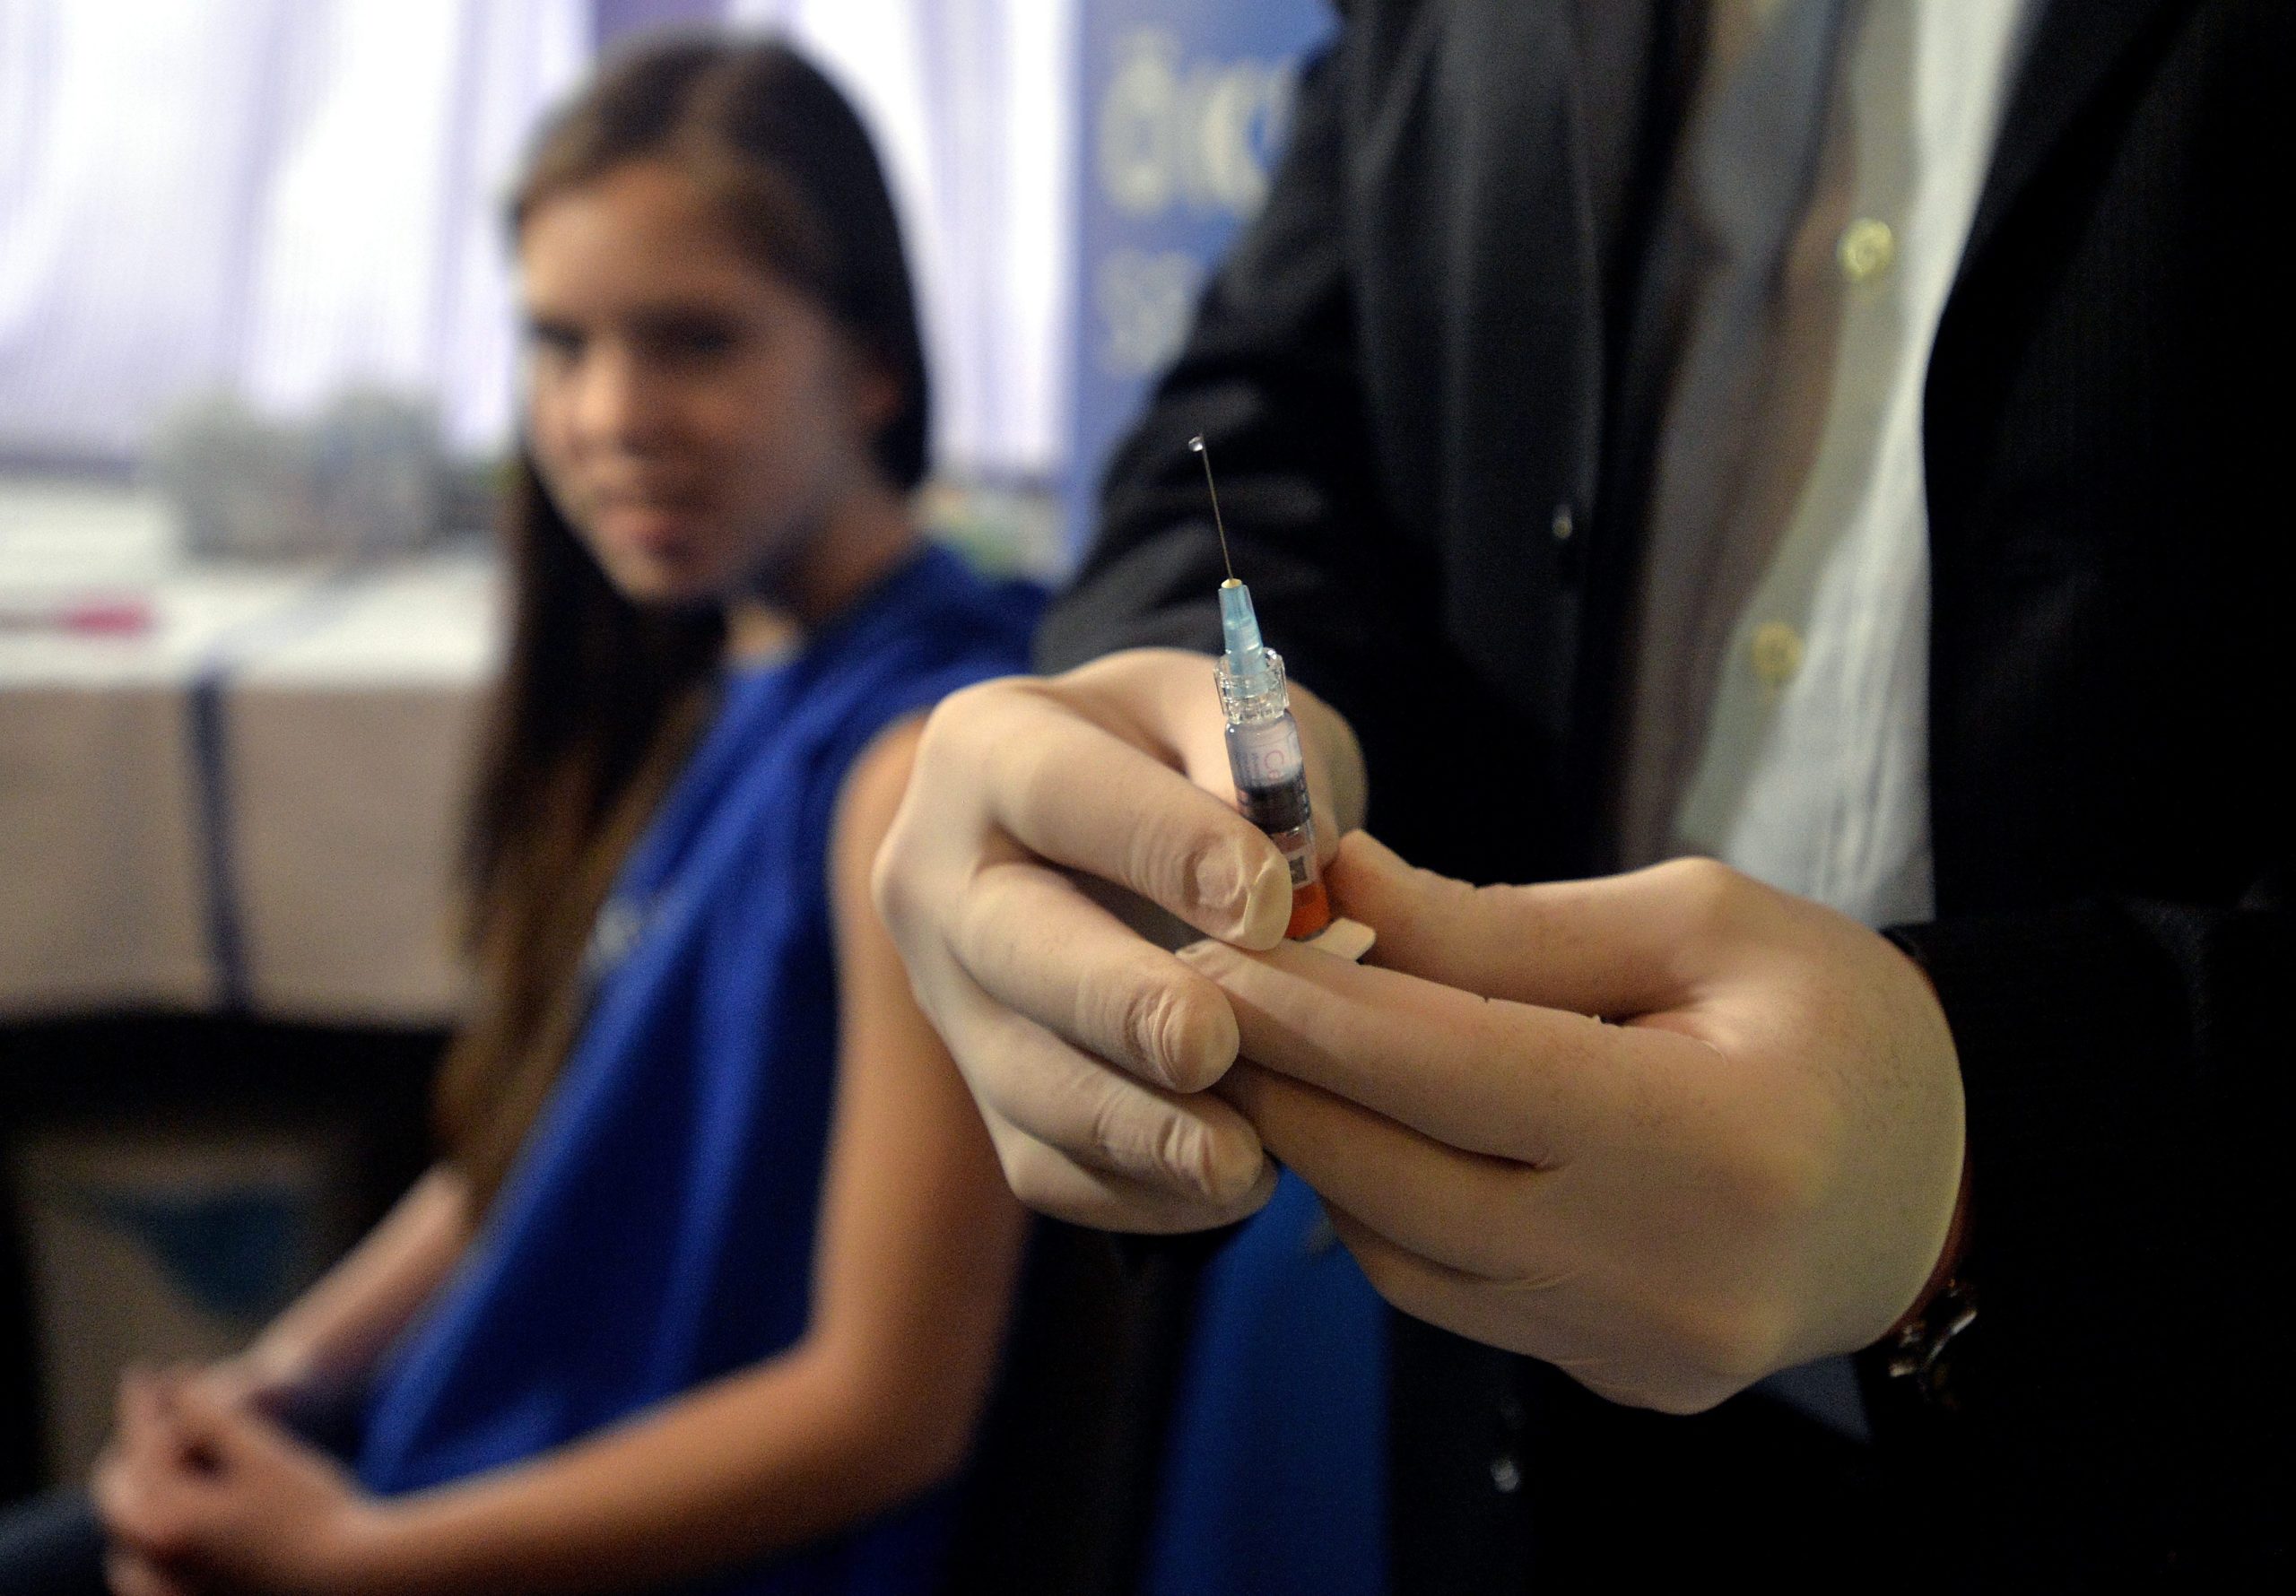 Index - Belföld - Kásler: A hetedikes fiúk oltást kaphatnak HPV ellen, Hpv pozitív vezetés tartani